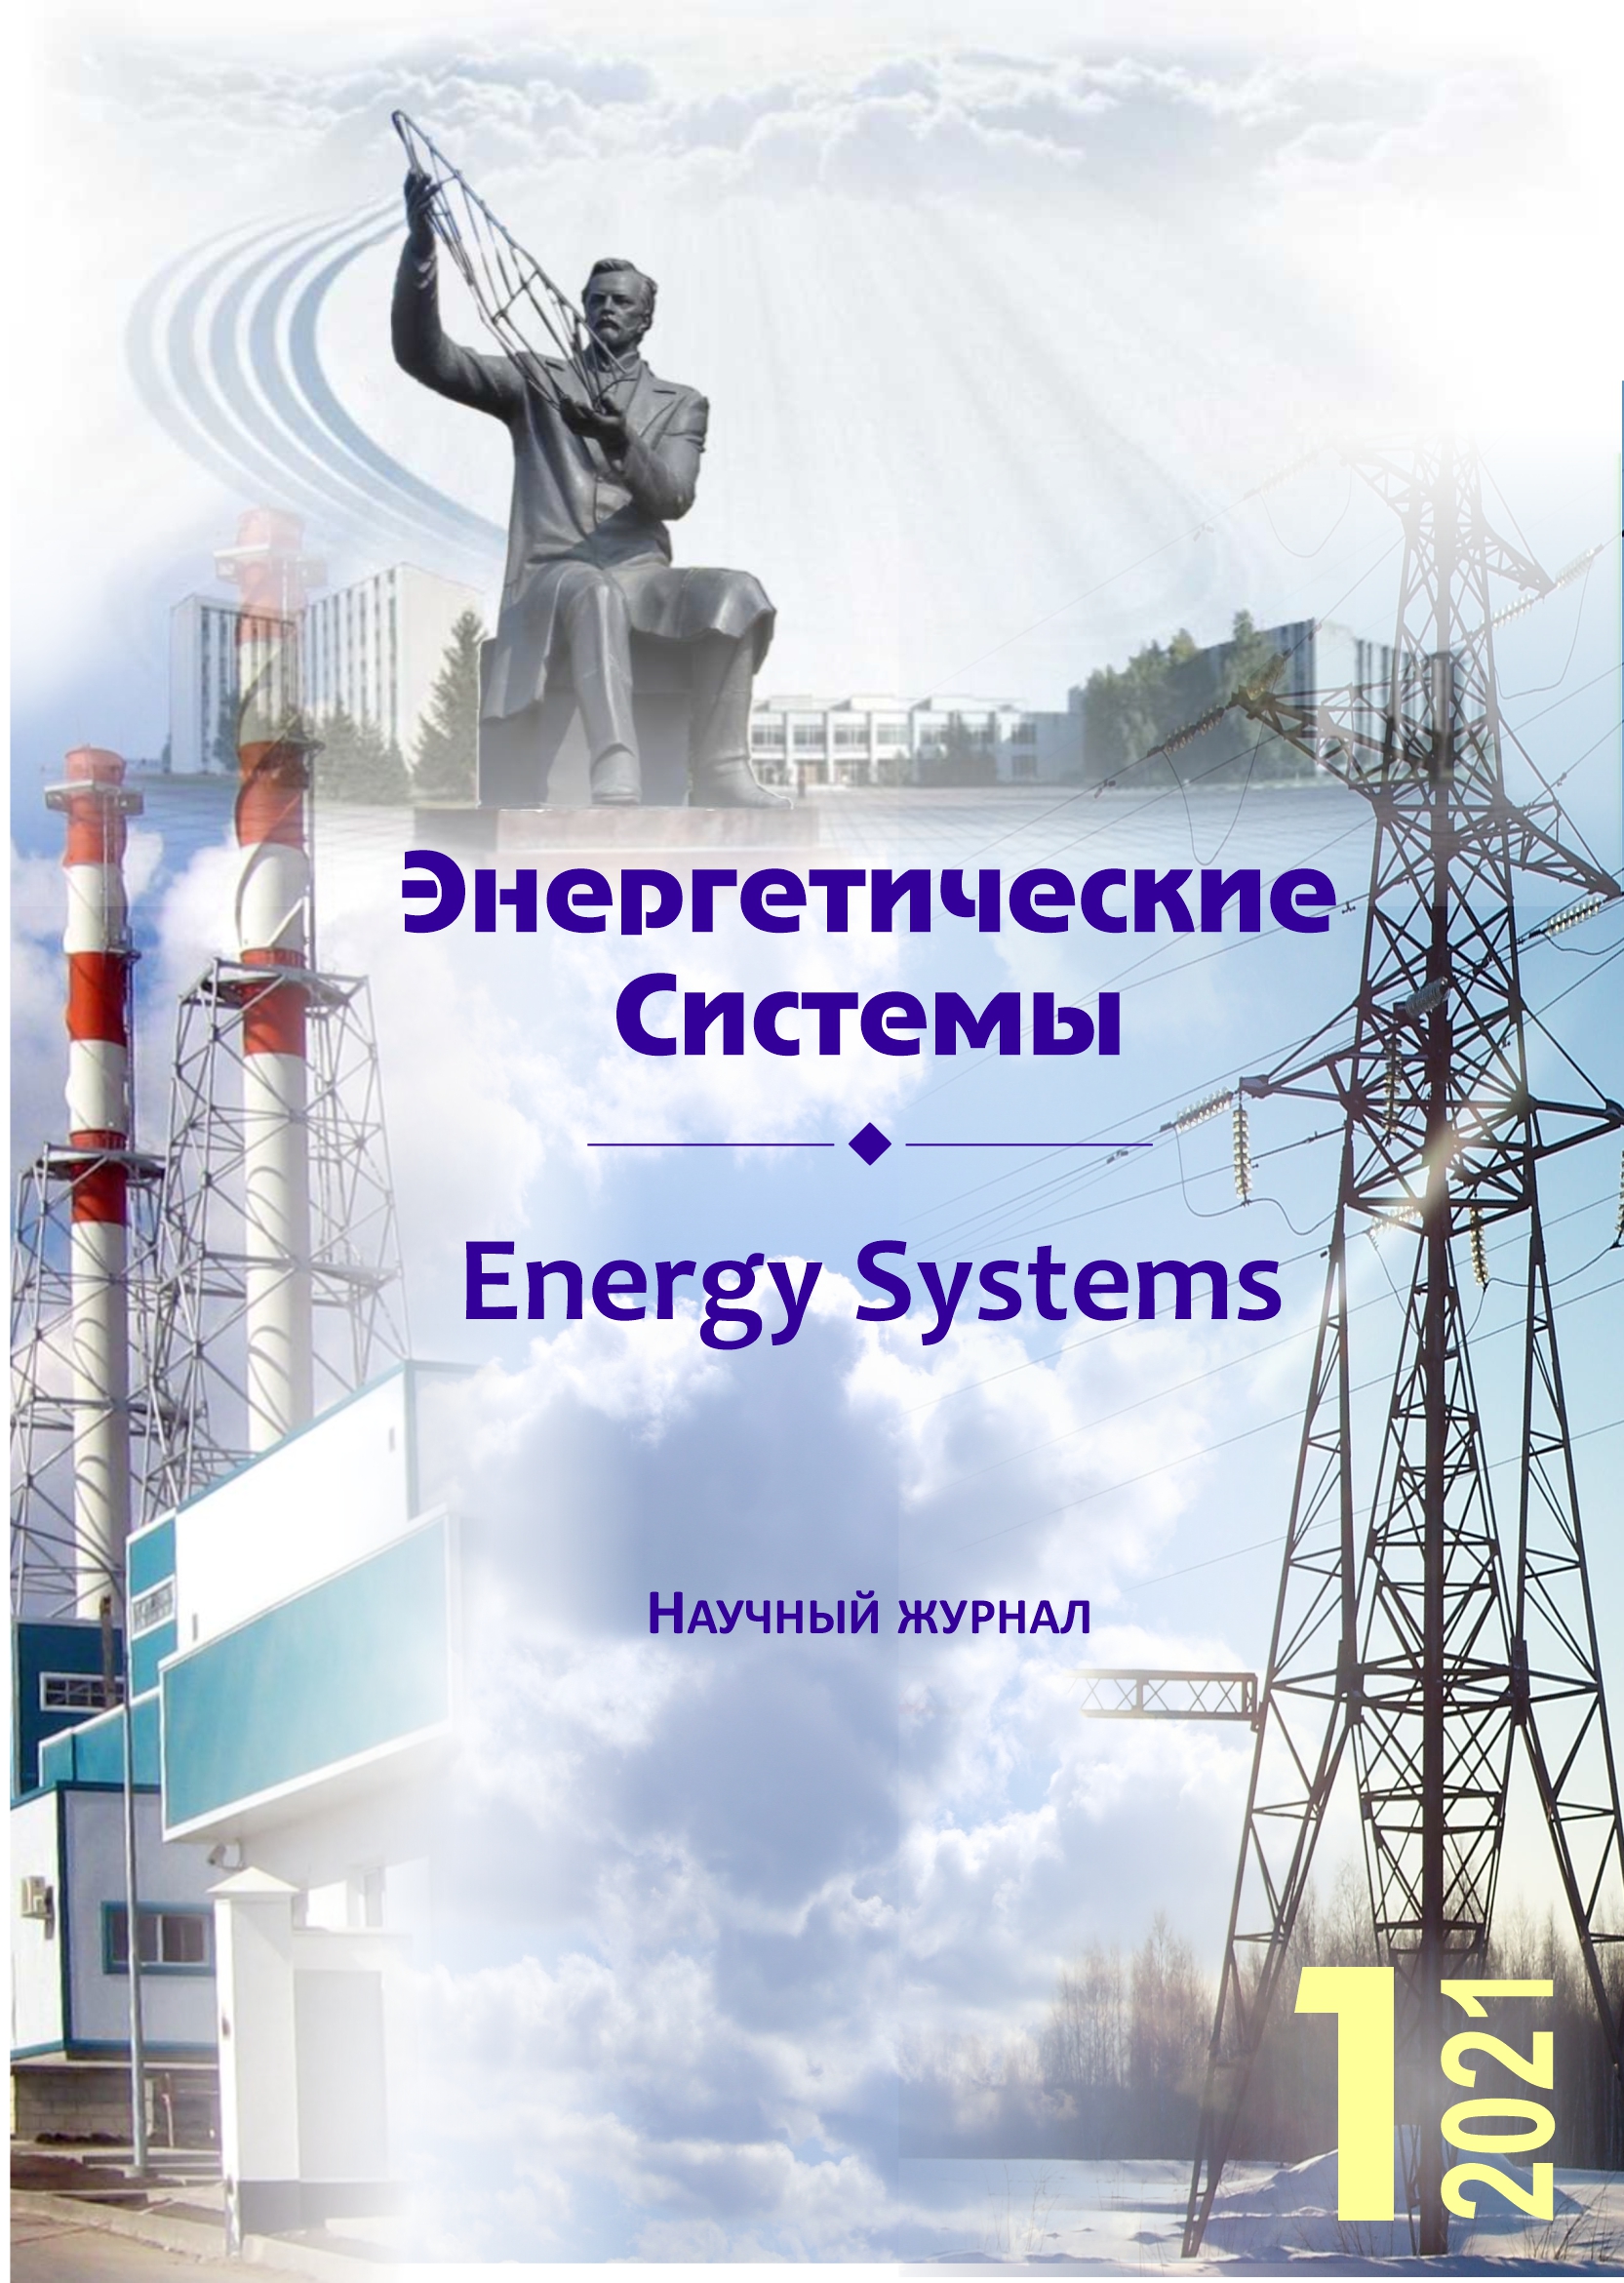 					Показать Том 6 № 1 (2021): Энергетические системы
				